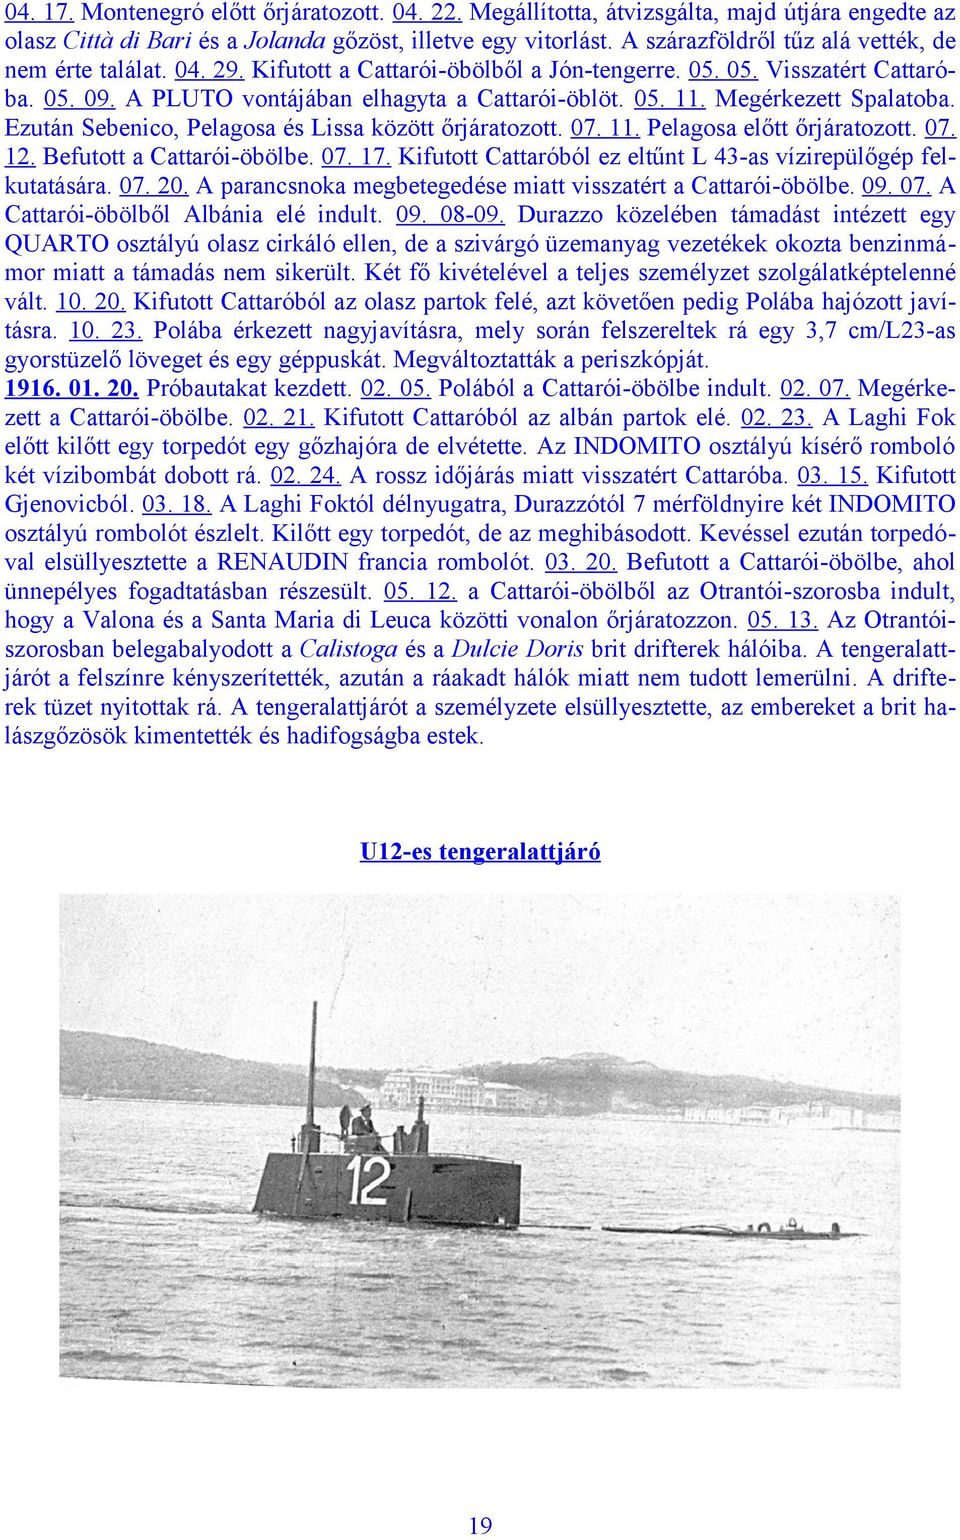 Megérkezett Spalatoba. Ezután Sebenico, Pelagosa és Lissa között őrjáratozott. 07. 11. Pelagosa előtt őrjáratozott. 07. 12. Befutott a Cattarói-öbölbe. 07. 17.